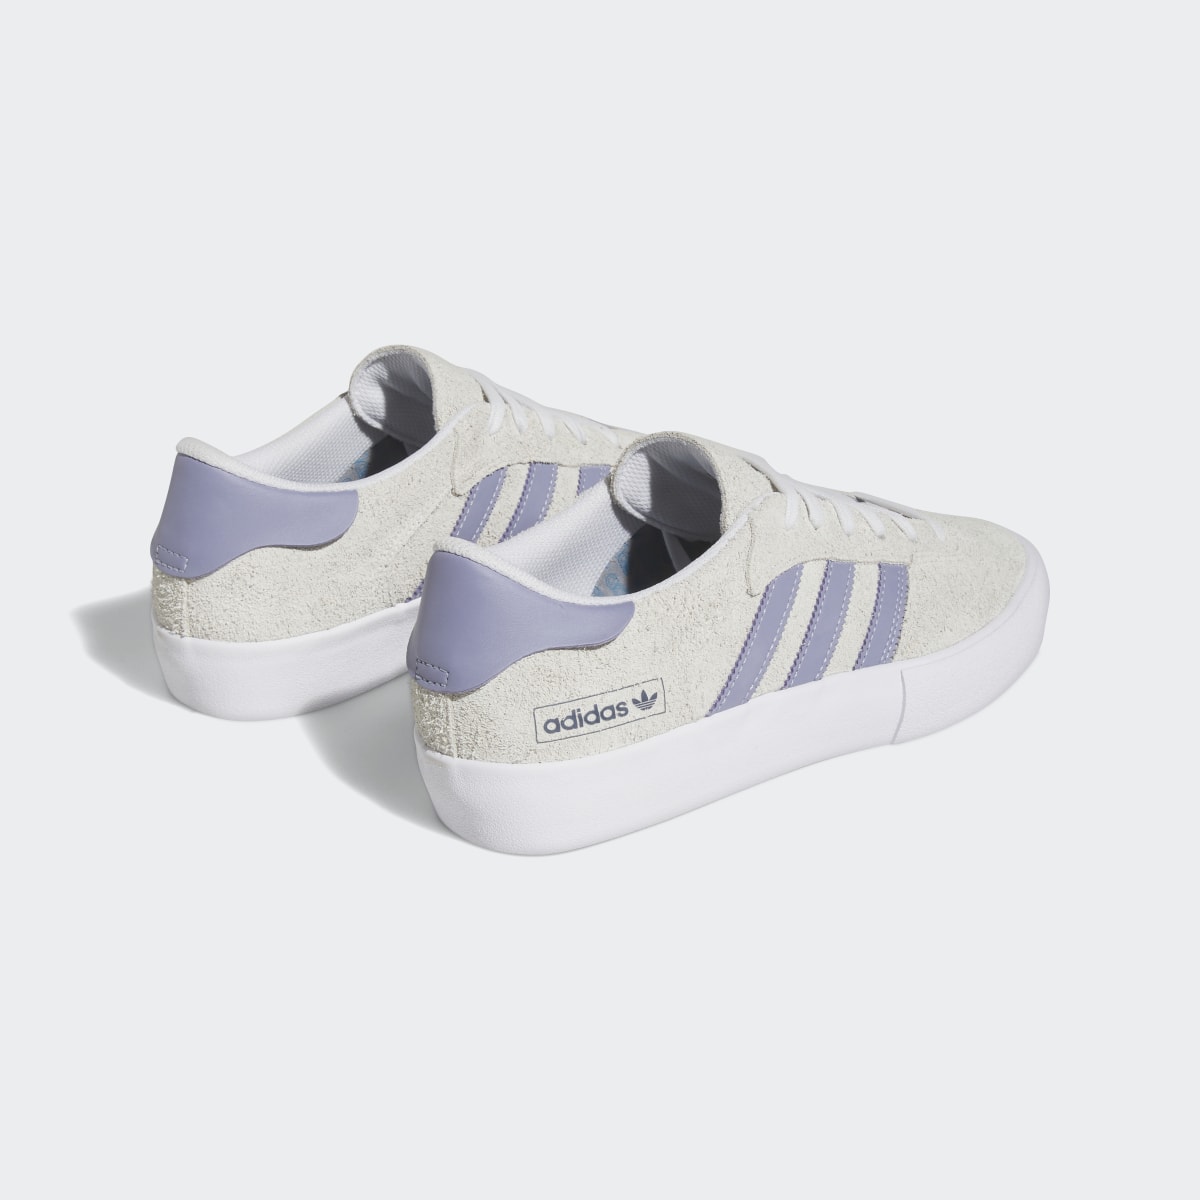 Adidas Matchbreak Super Shoes. 6